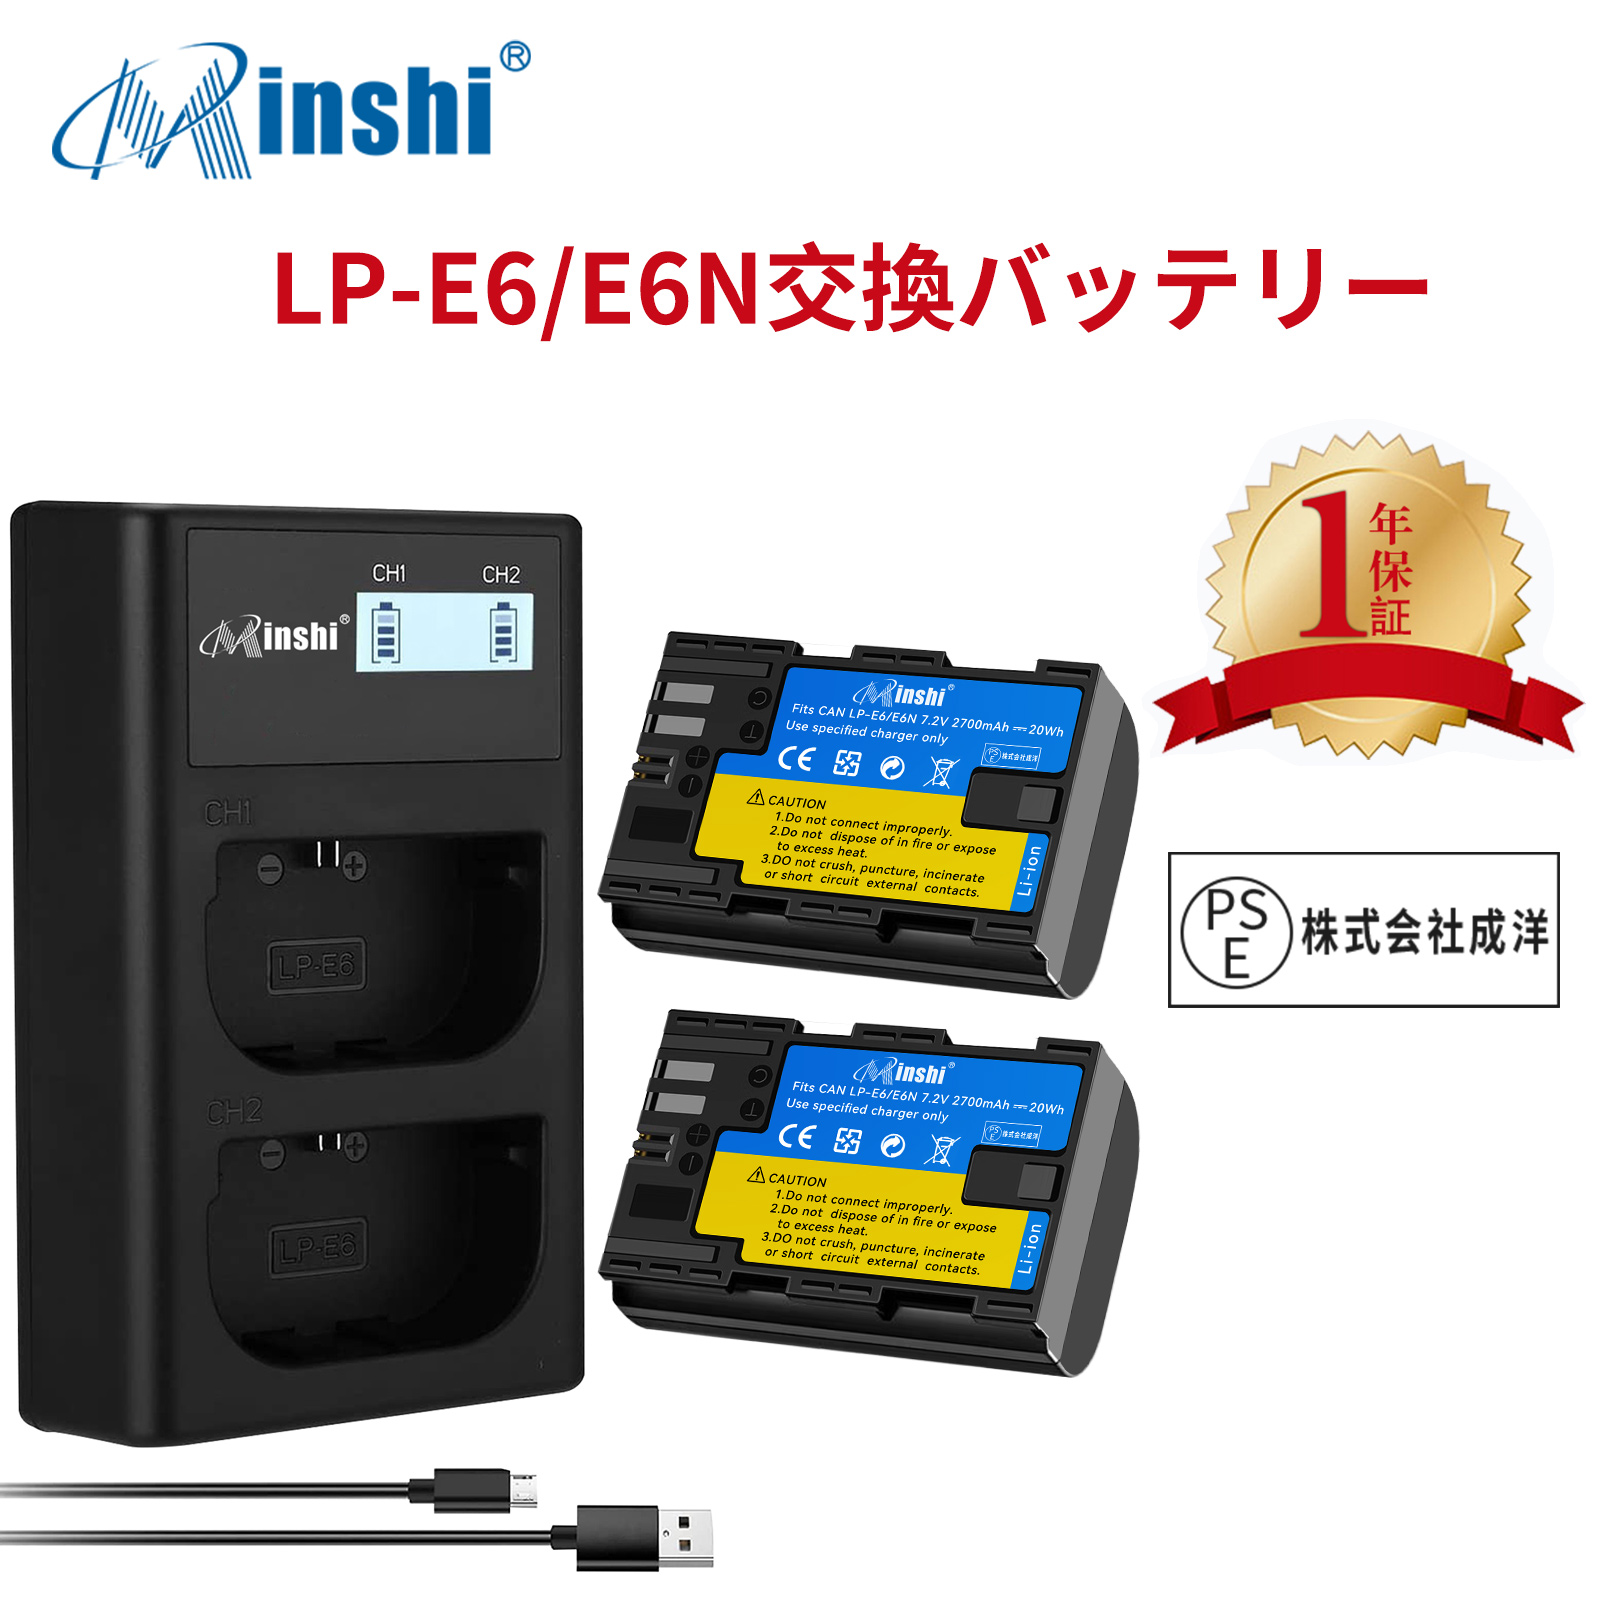 【２個セット】minshi Canon EOS 7D LP-E6 LP-E6N EOS6D CANON 80D 【2700mAh 7.2V】【互換急速USBチャージャー】 高品質 LP-E6NH 交換用バッテリー